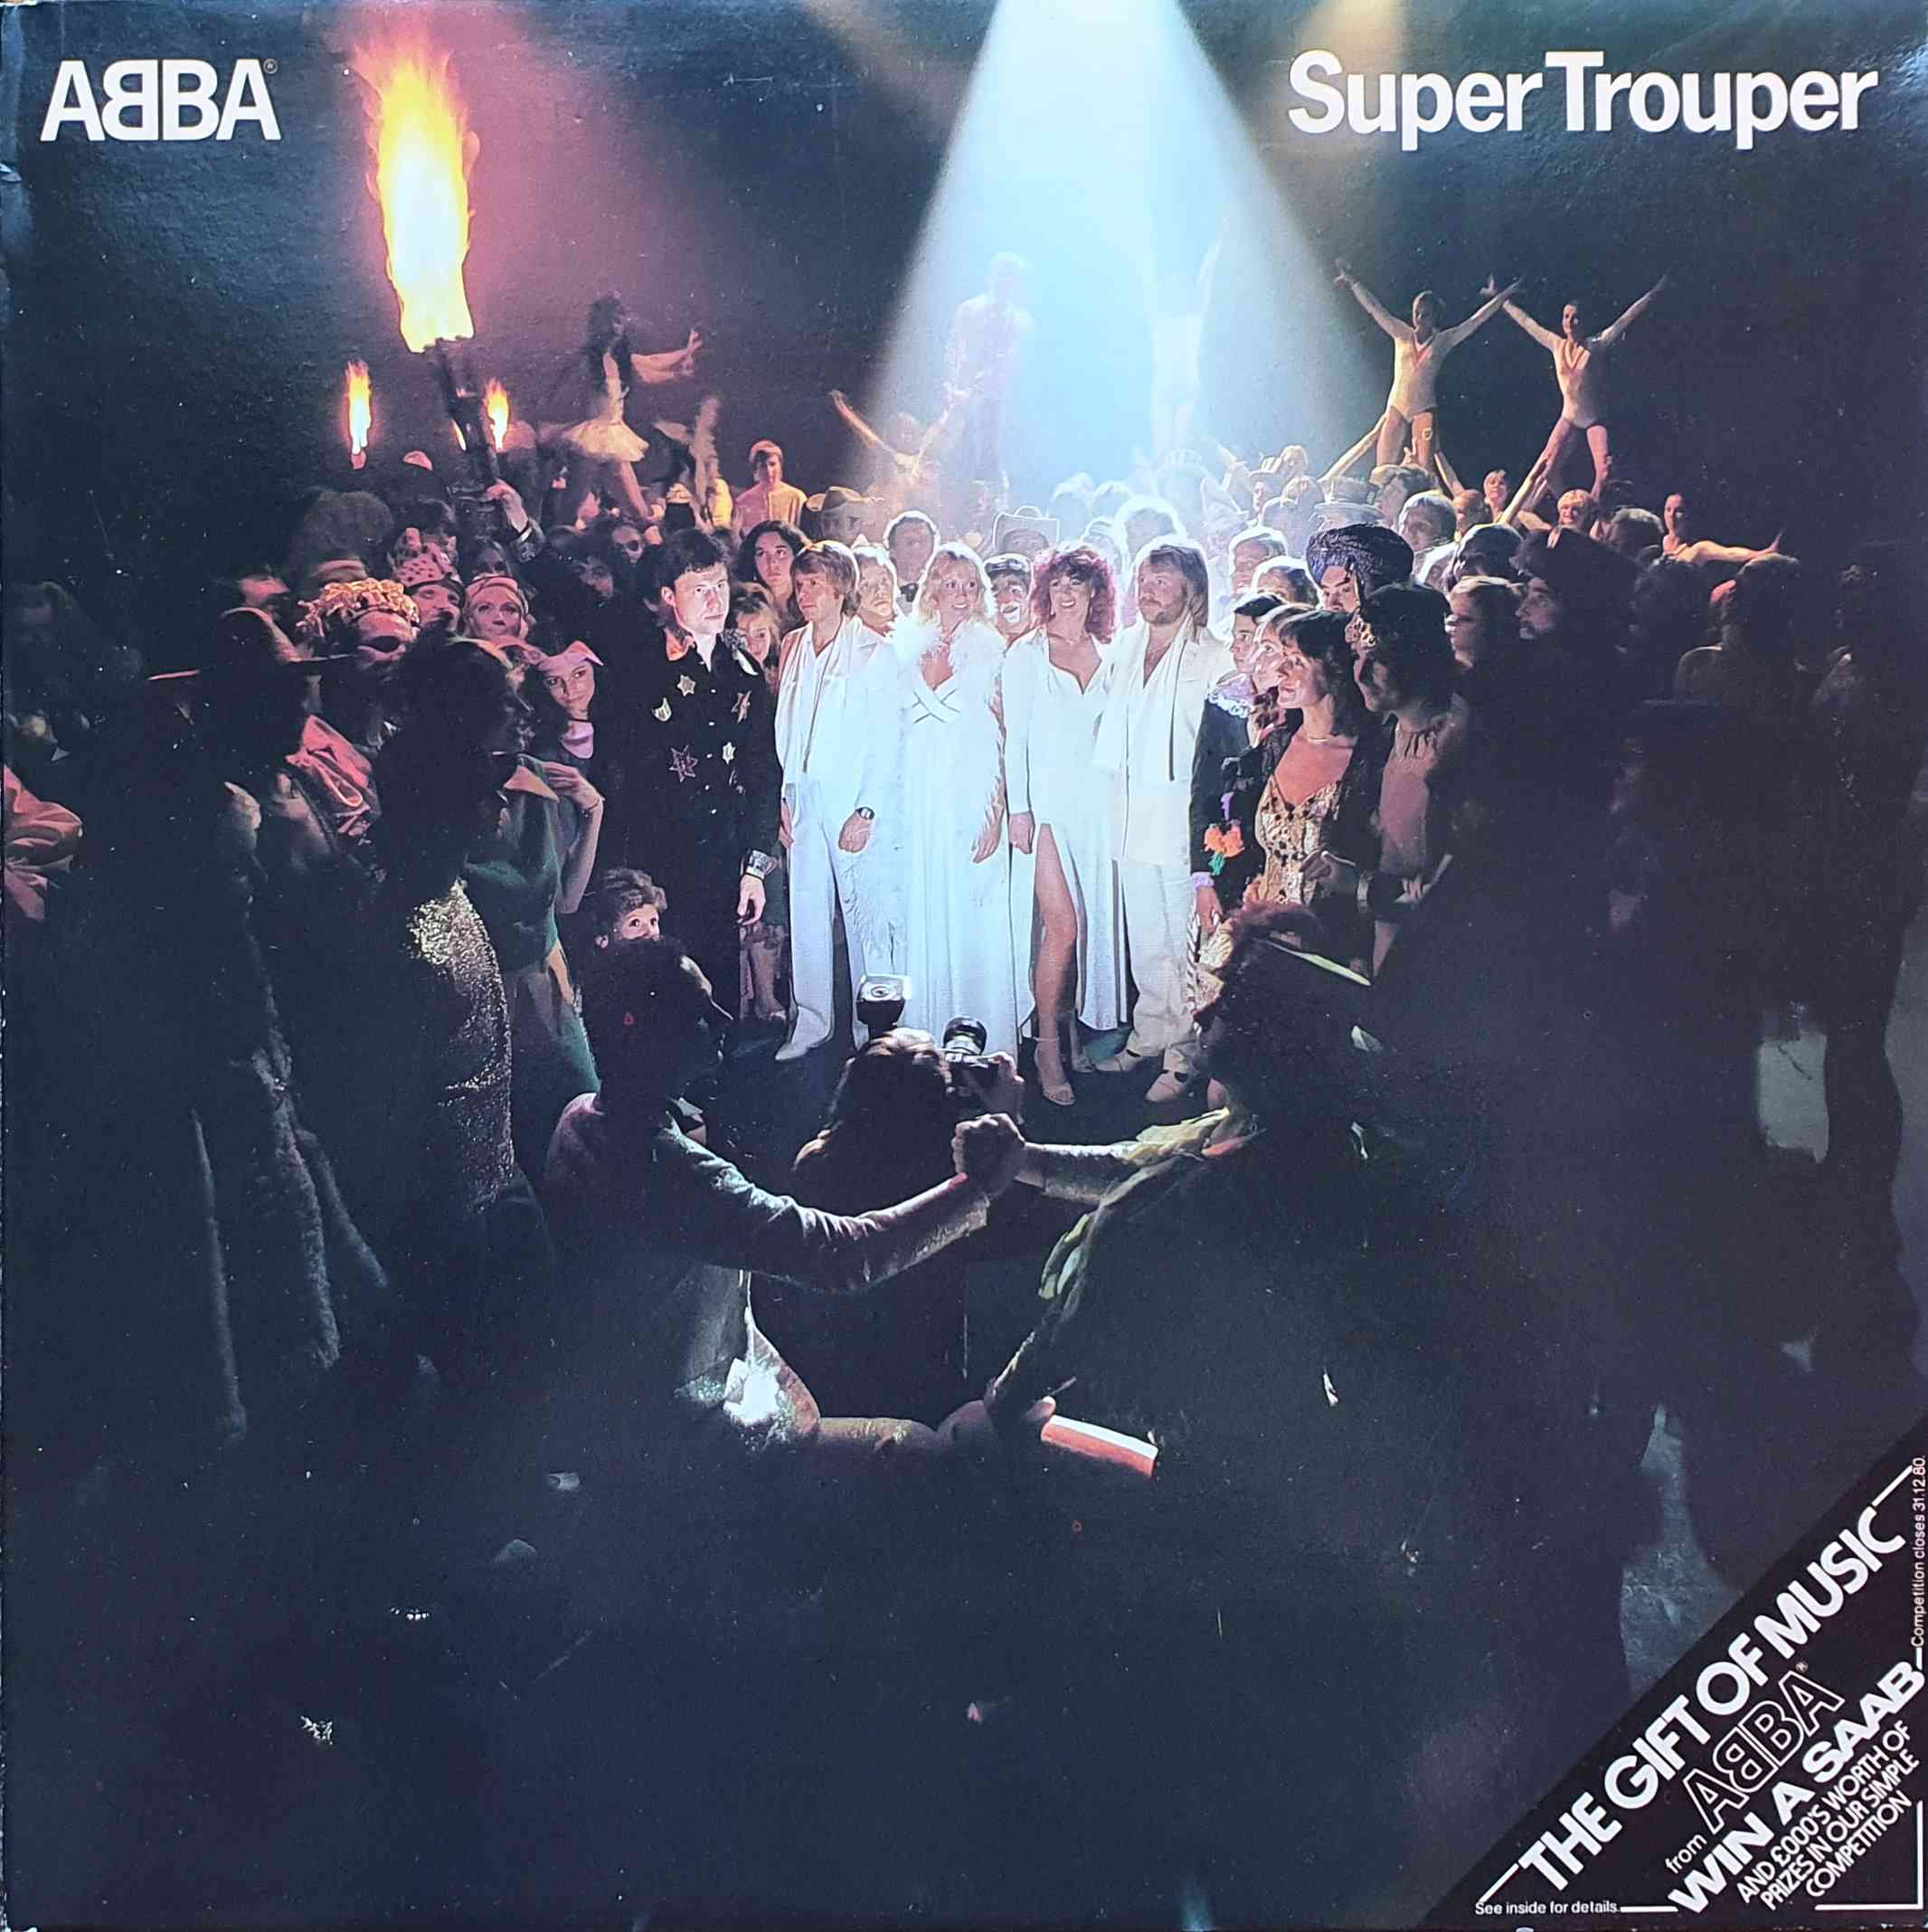 Picture of EPC 10022 Super Trouper album by artist Abba 